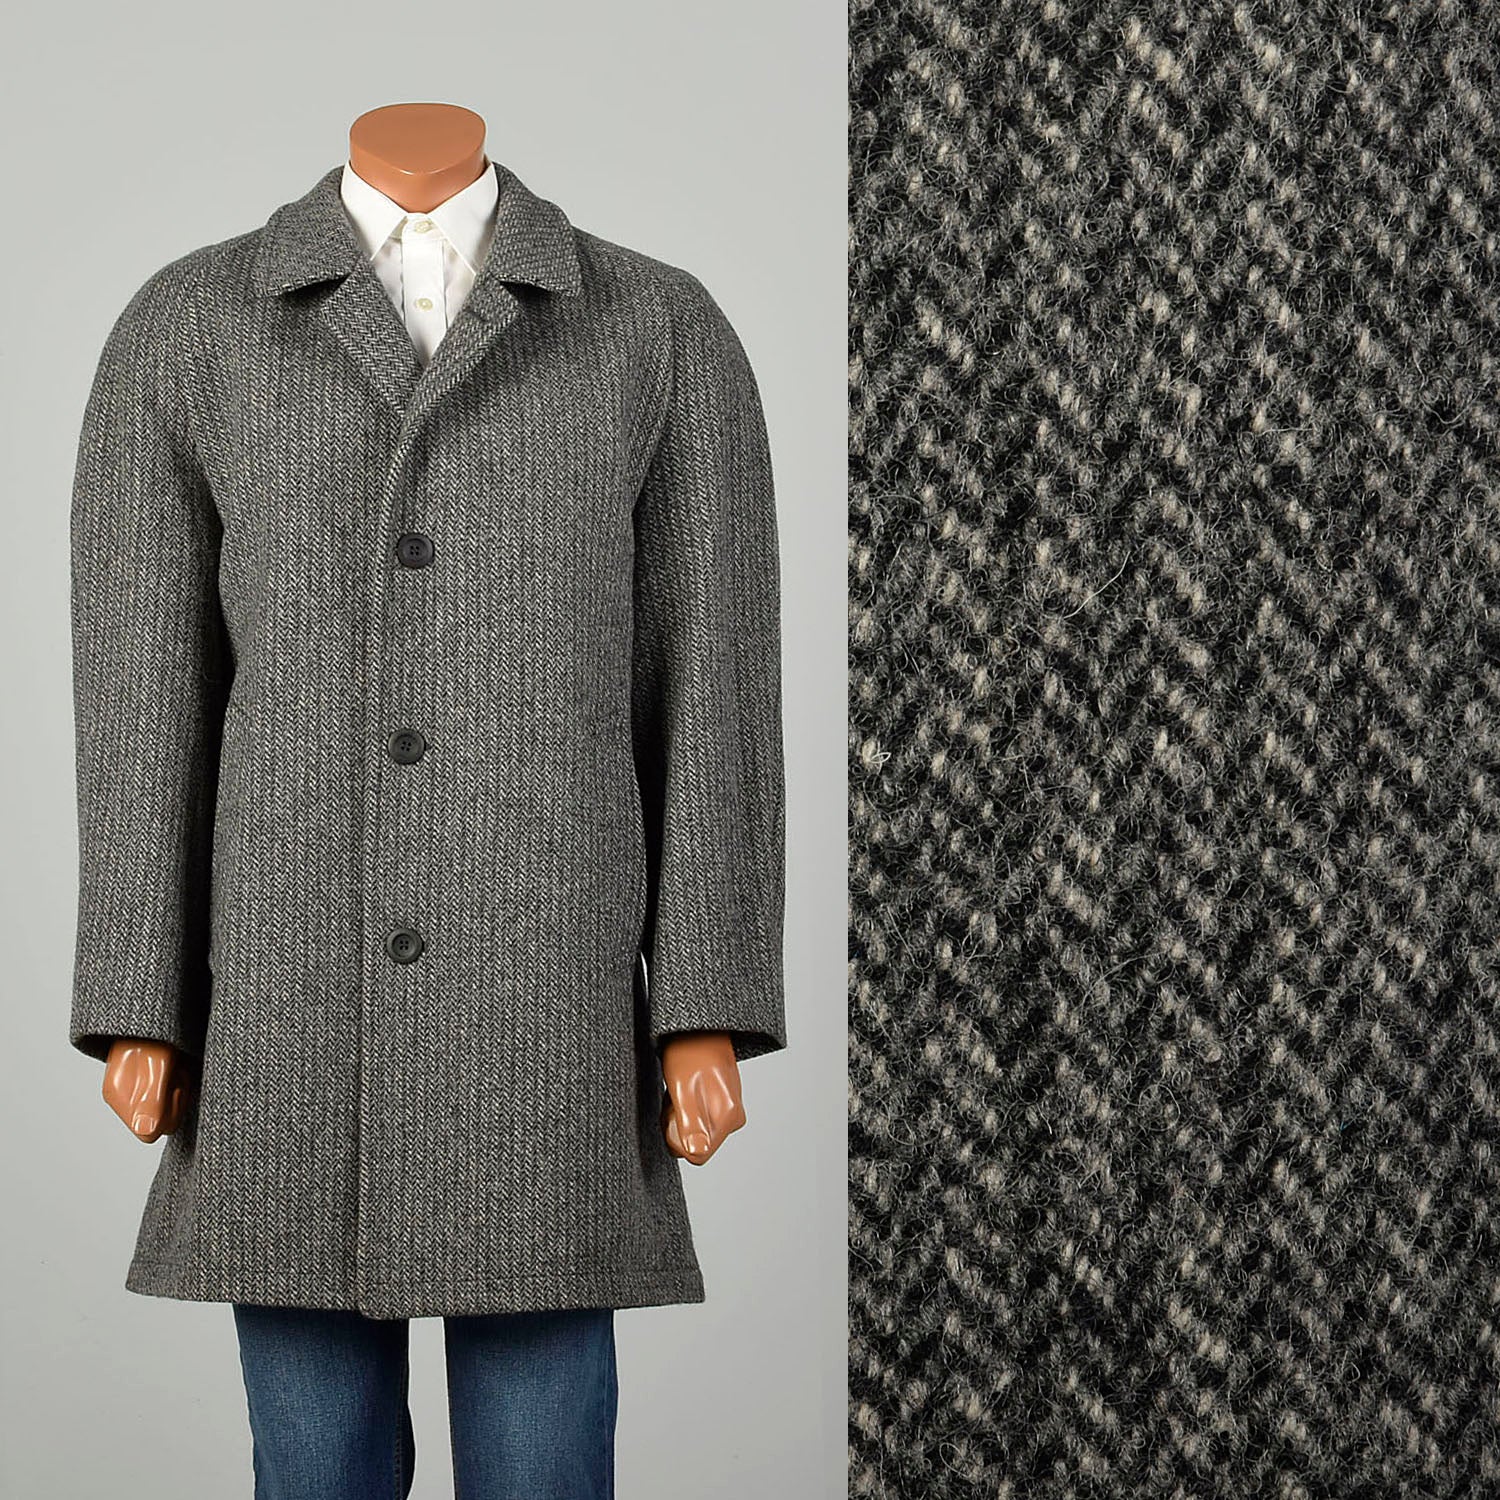 Large 1980s Car Coat Grey Wool Herringbone Tweed Winter Outerwear